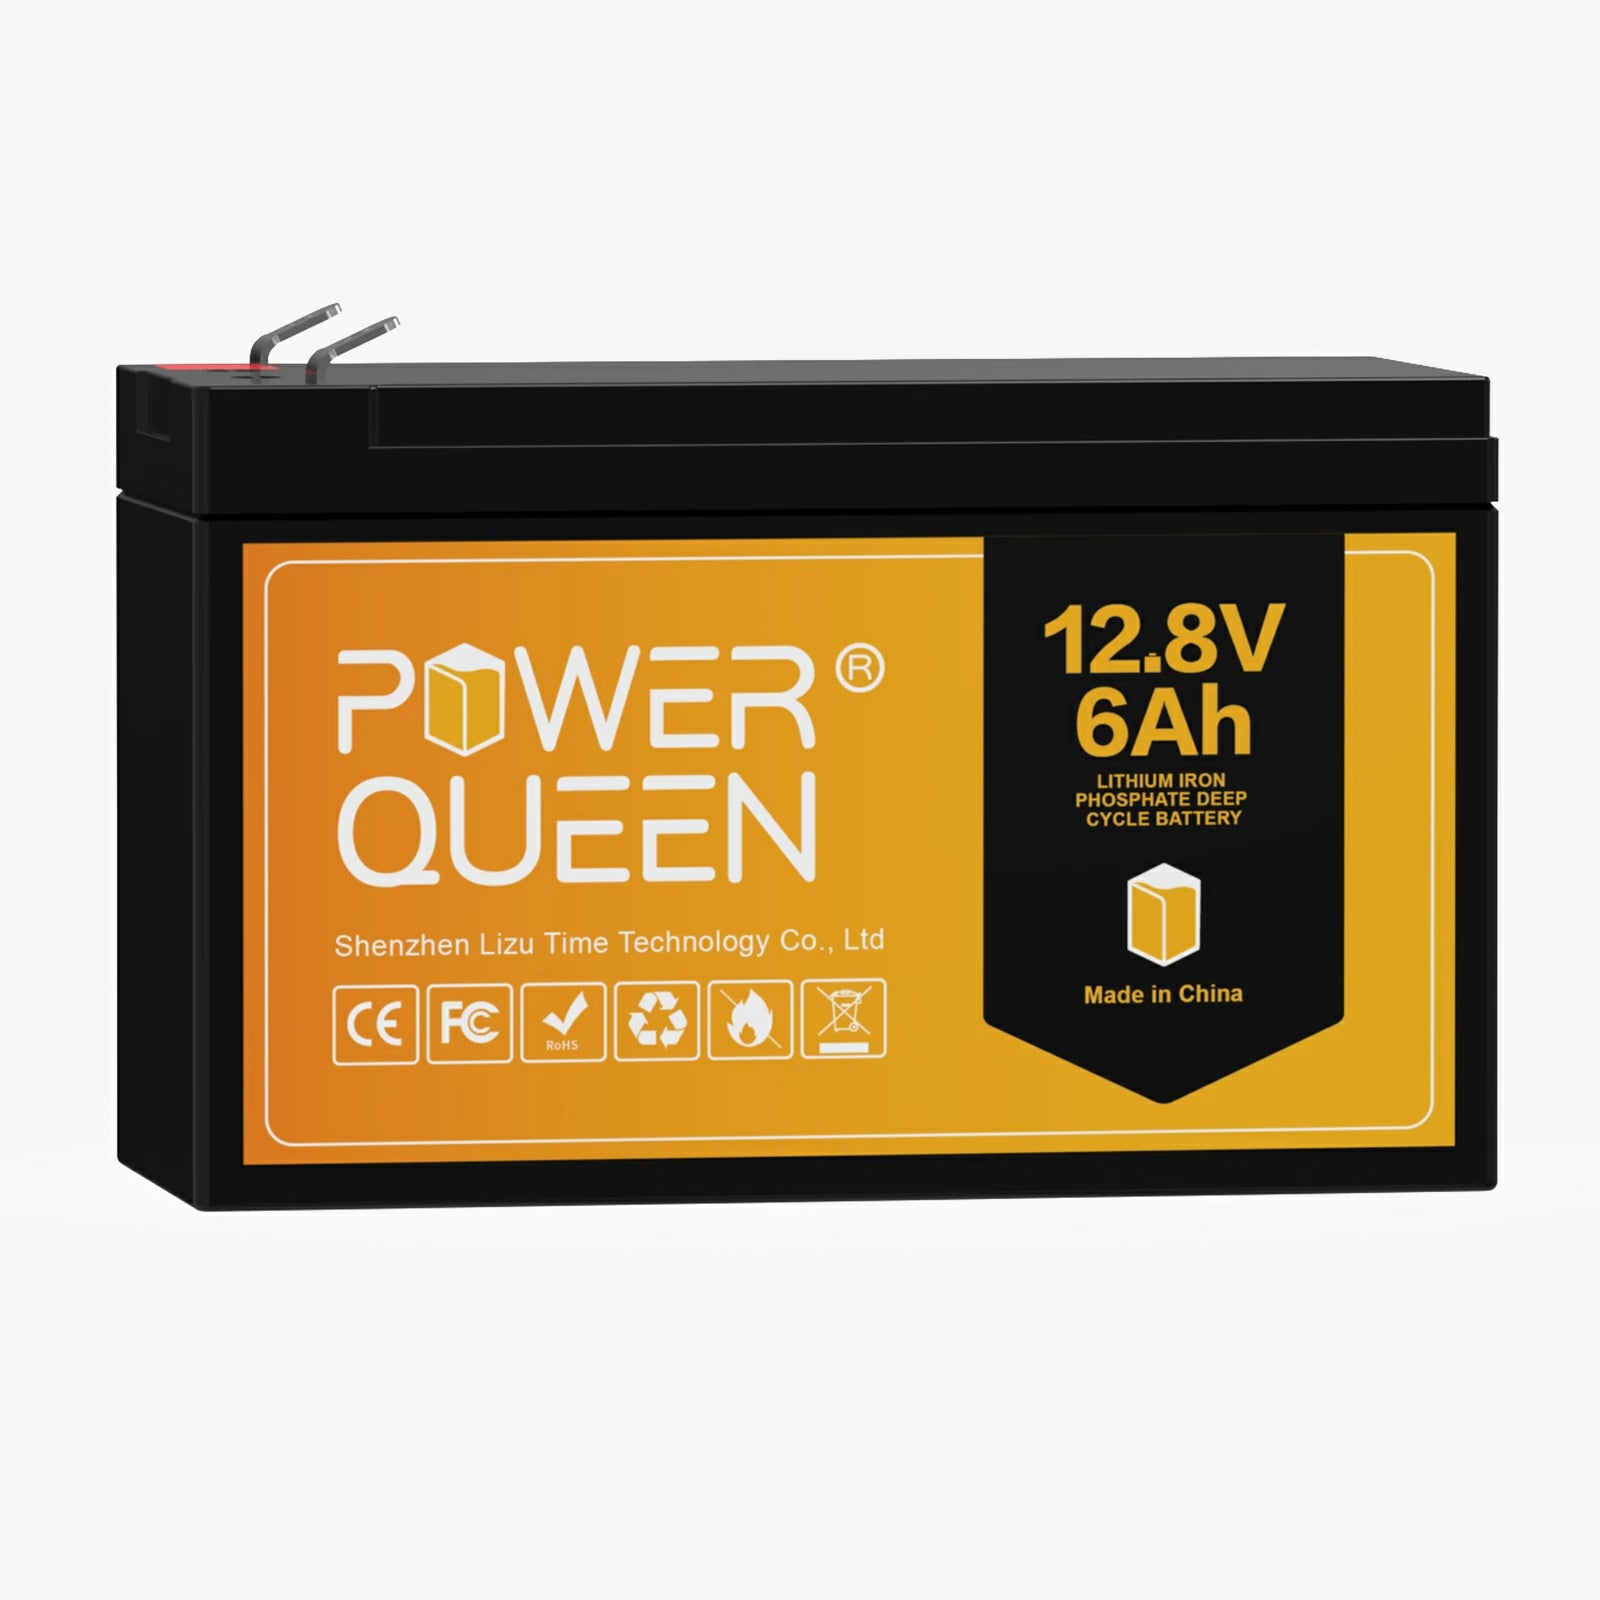 Power Queen 12V 300Ah Batterie LiFePO4 Akku Lithium Idealer Ersatz